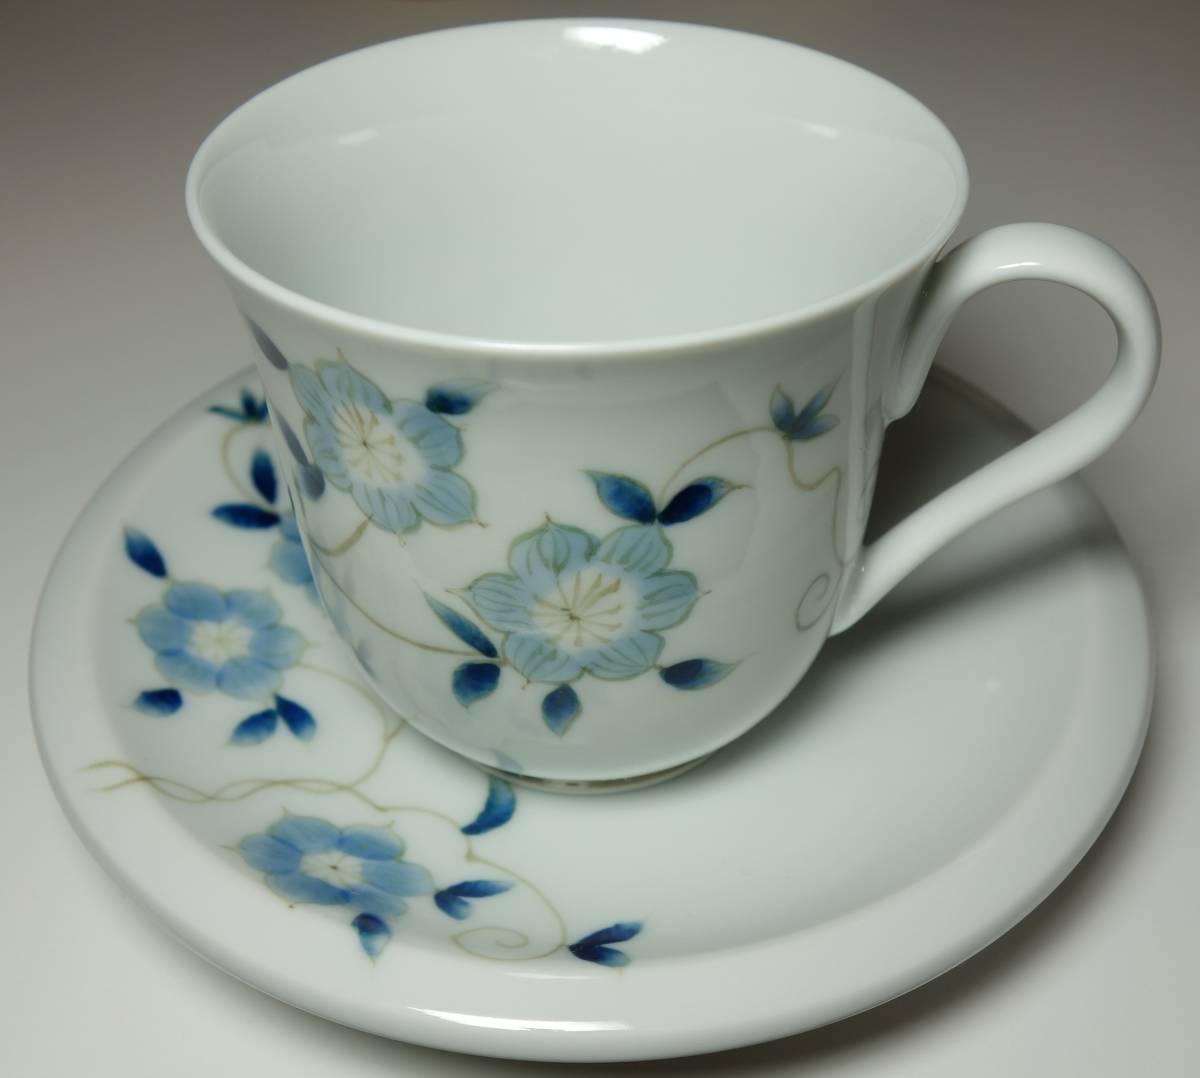 Heisei Período Romance Ilustración de flores pintadas a mano Taza de café y platillo Mano rara, ceramica japonesa, Cerámica en general, porcelana coloreada